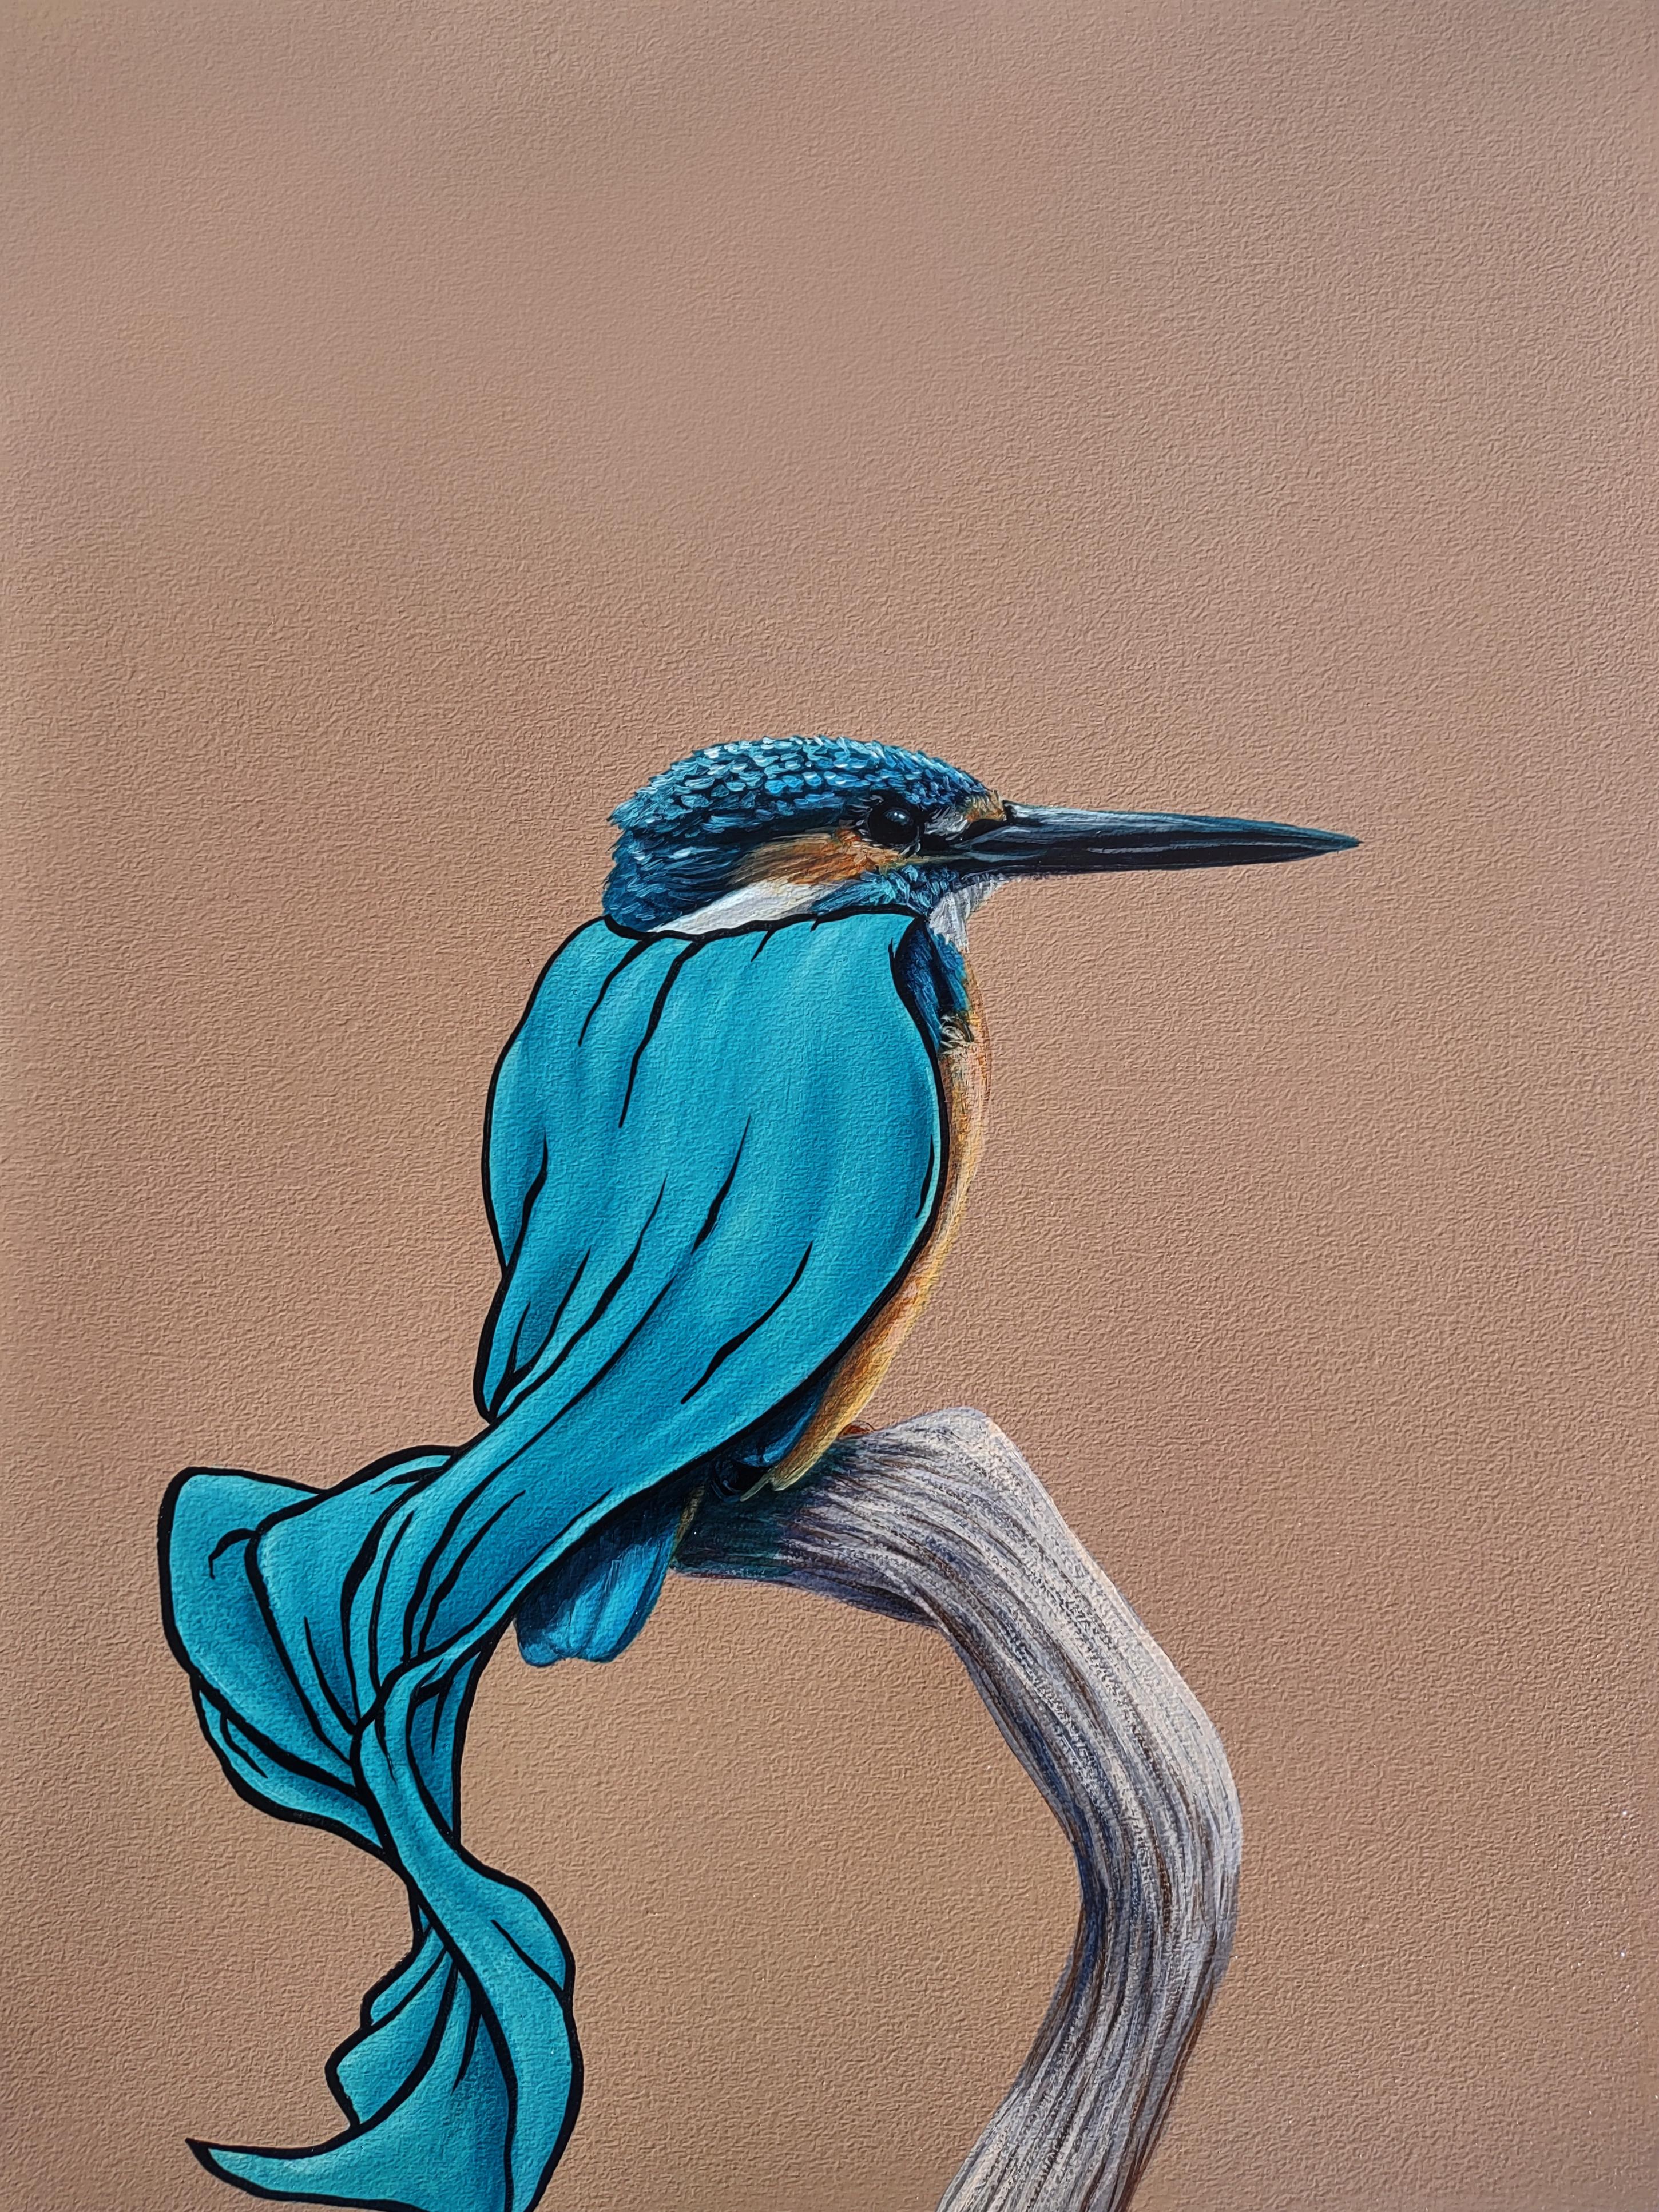 Animal Painting 3rd Version (Ben Patterson) - « Masks We Wear, Sometimes it's a Cape », peinture à l'huile de Woodpecker avec Cape bleue